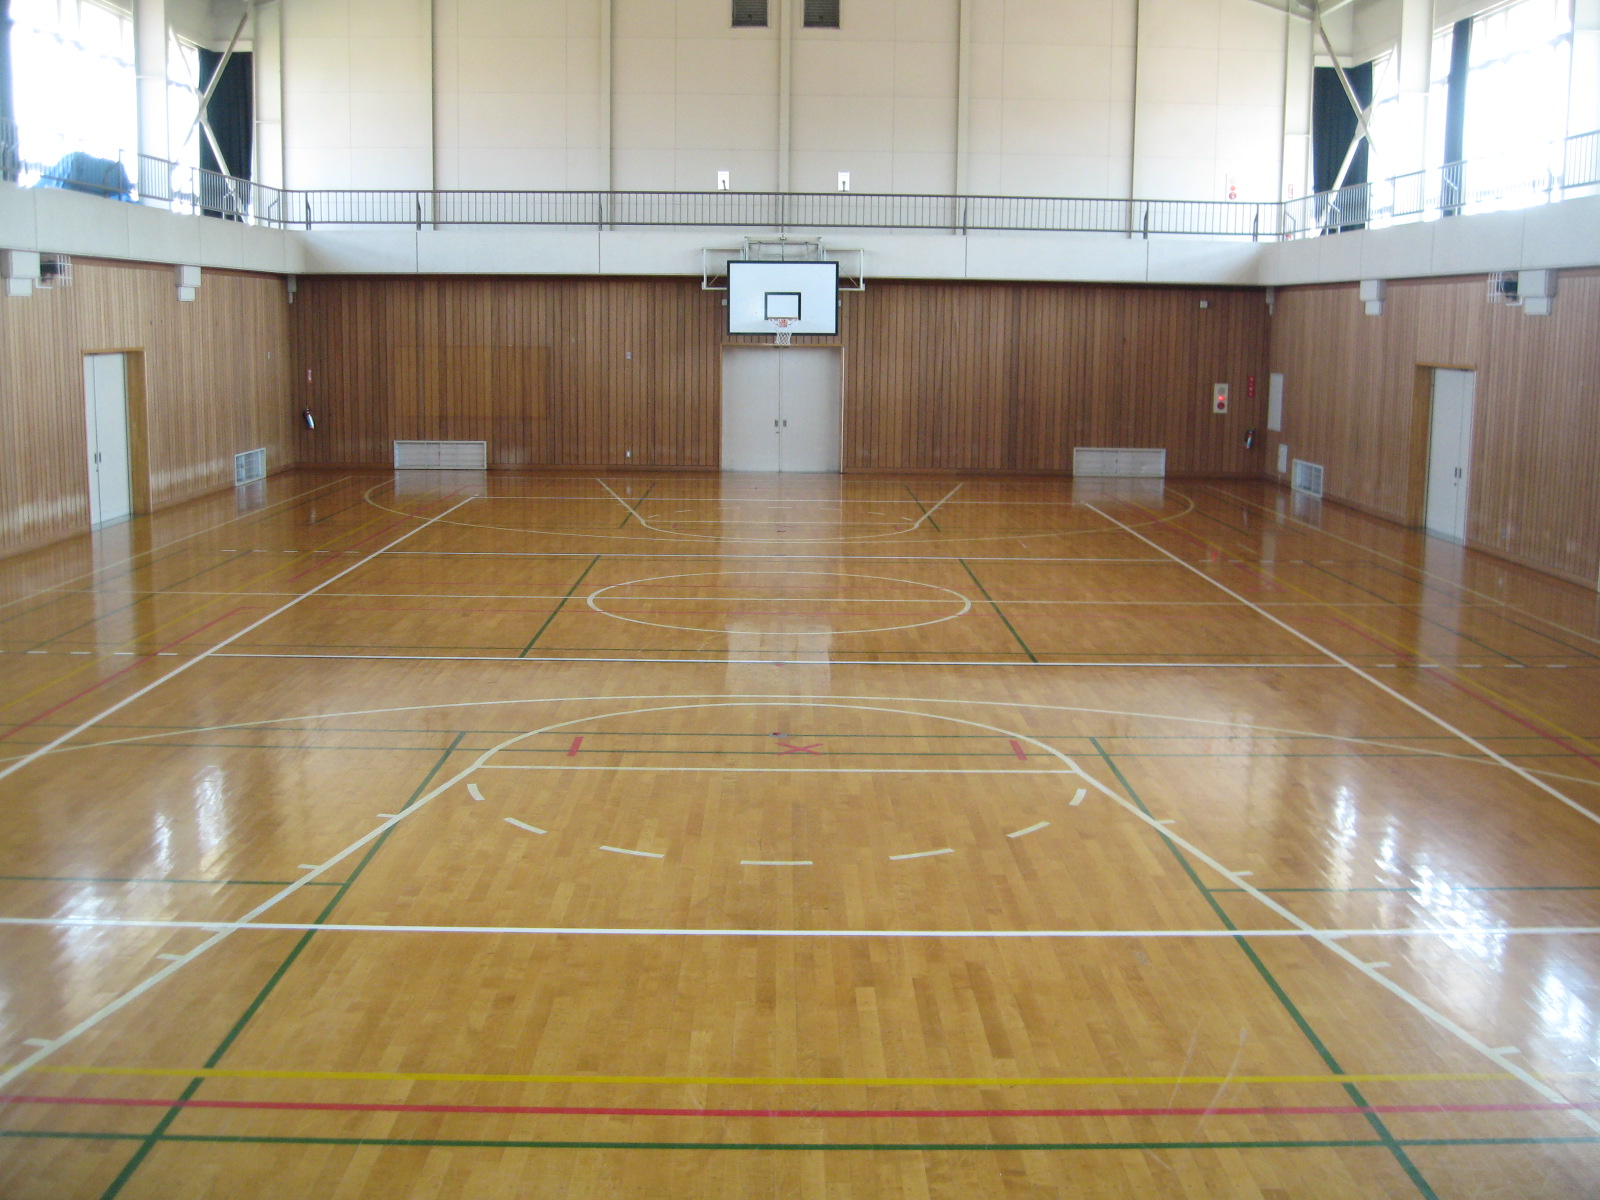 壁にバスケットゴールが設置され、床にラインテープが貼り付けてある広々とした体育館の写真